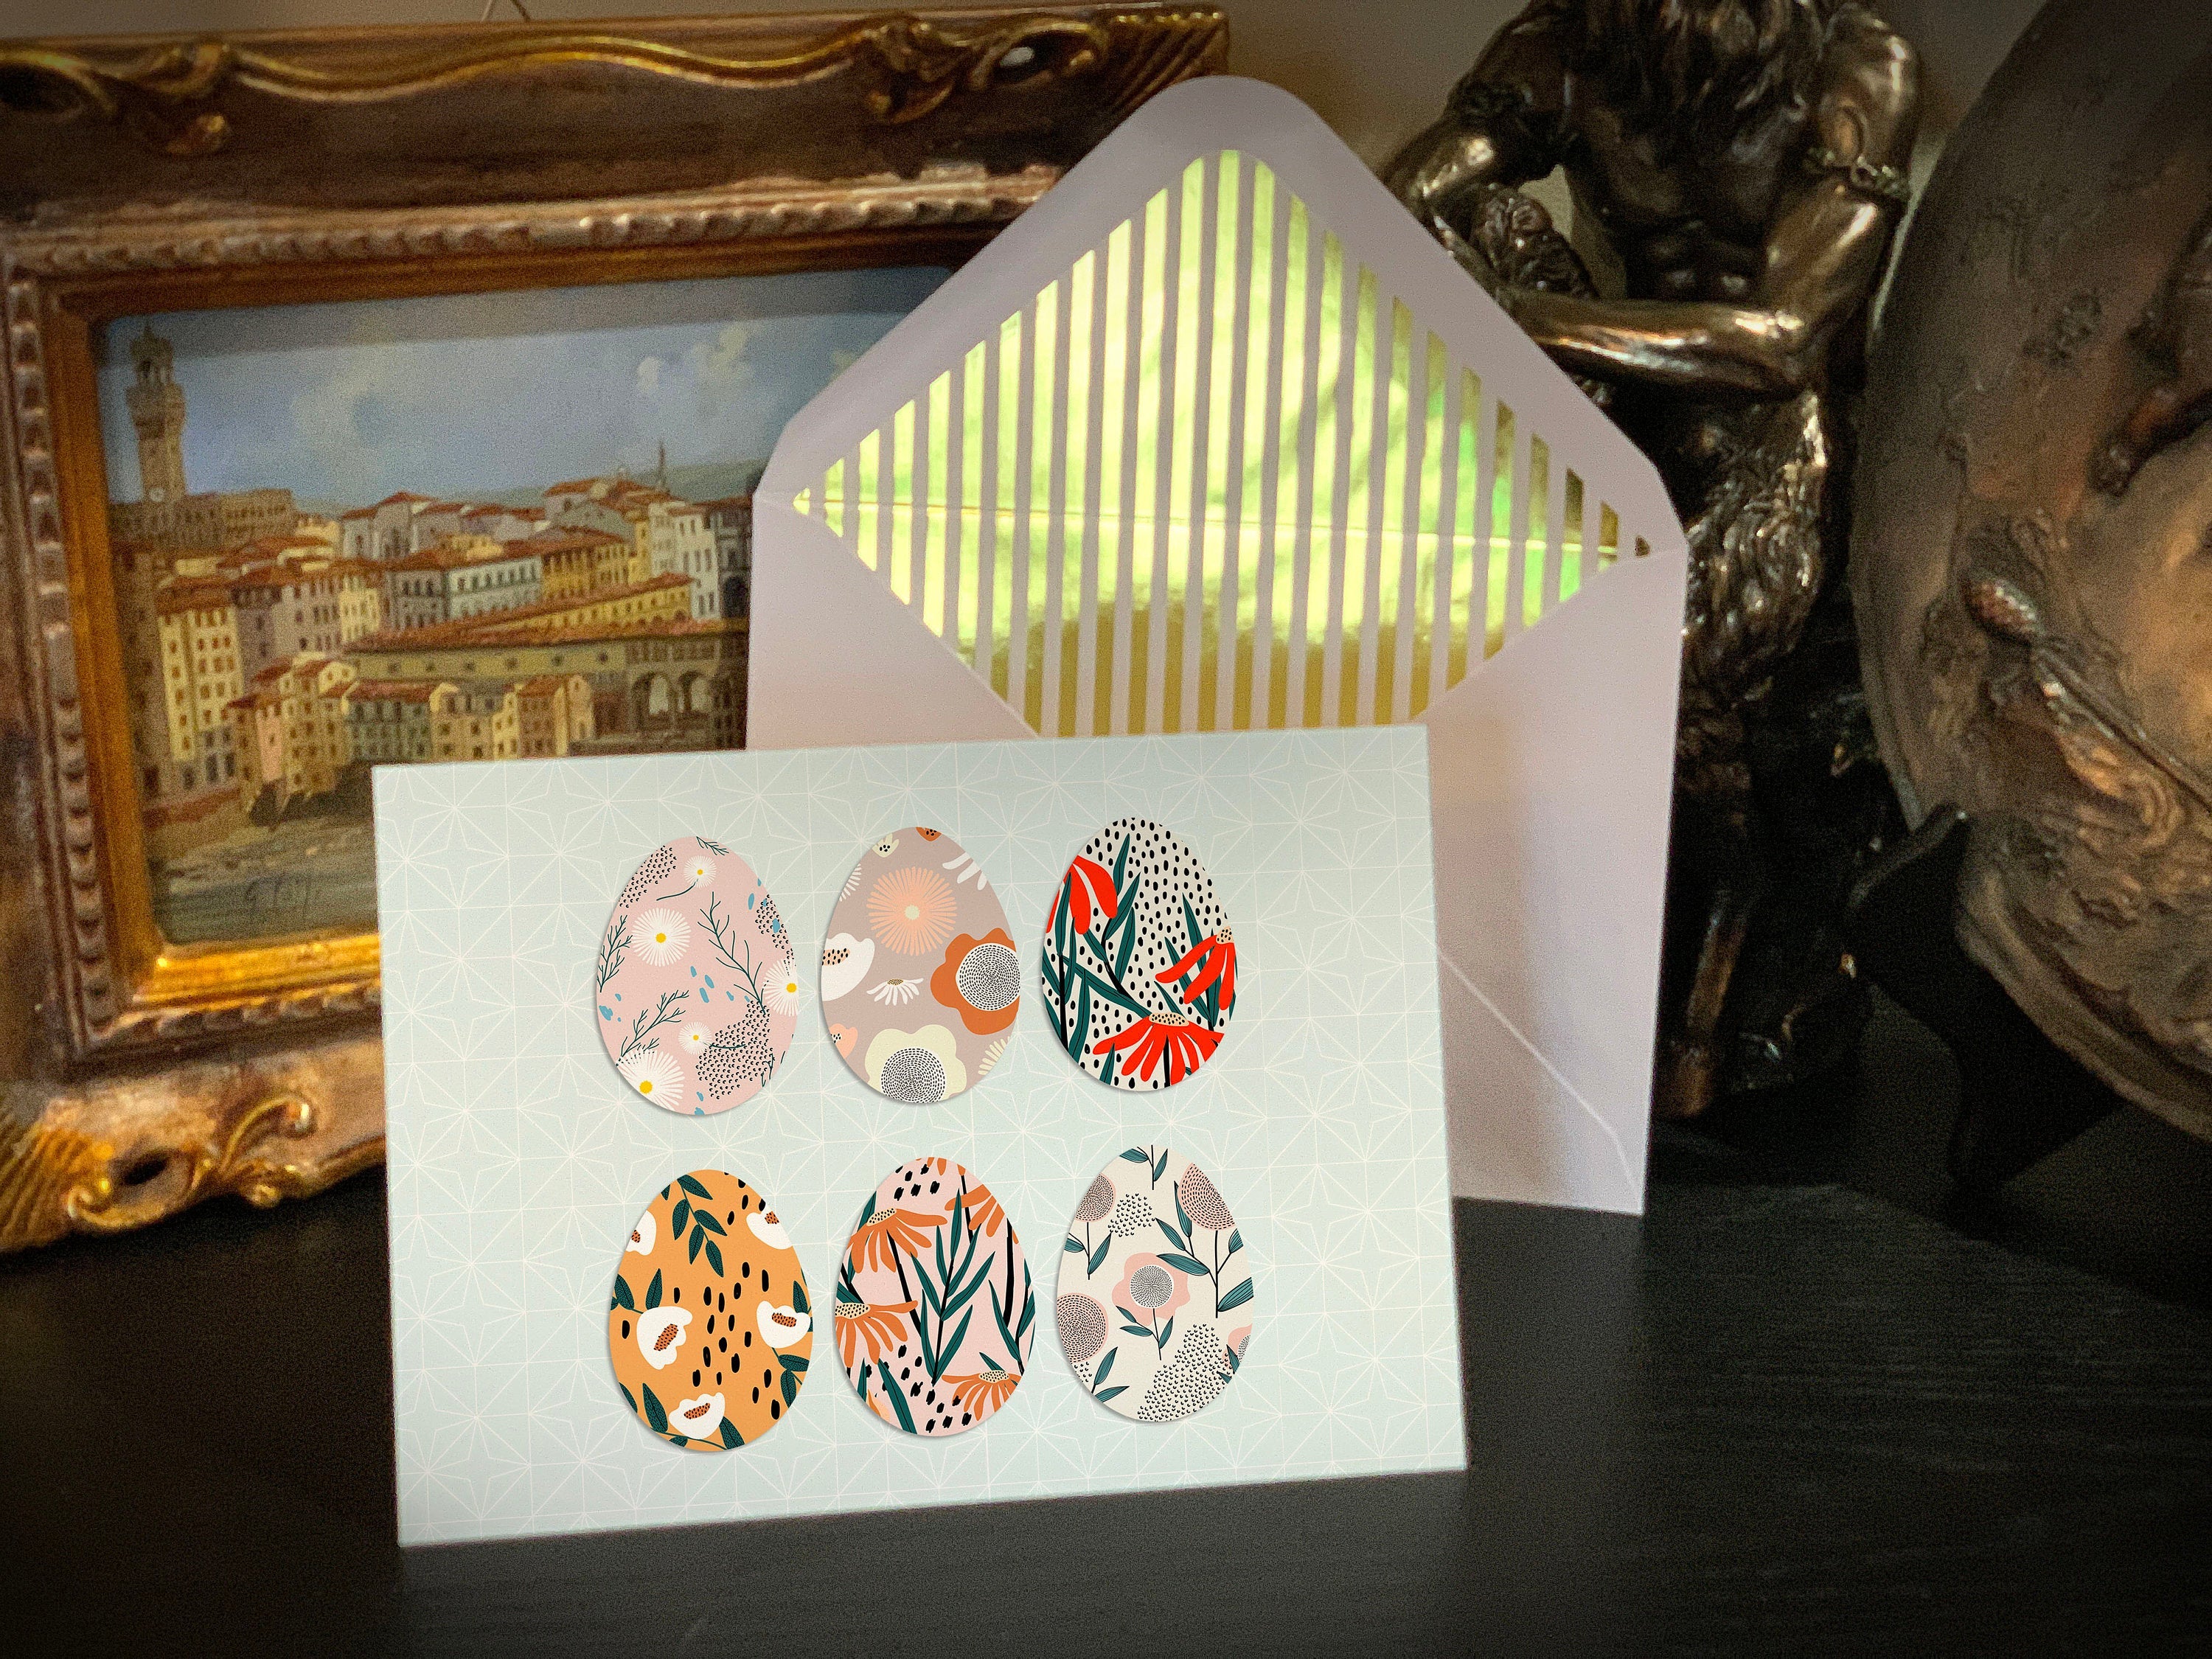 Modern Easter Eggs, Easter Greeting Card with Elegant Striped Gold Foil Envelope, 1 Card/Envelope